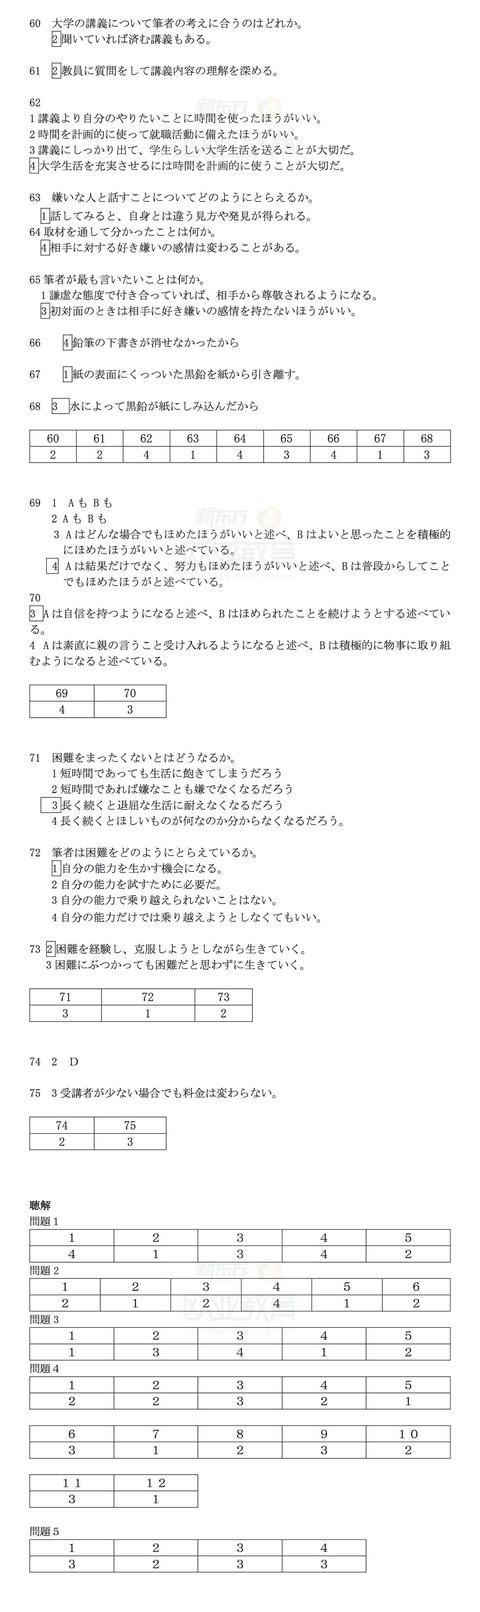 日语能力考试 Jlpt 答案解析回忆版 附17年12月原题